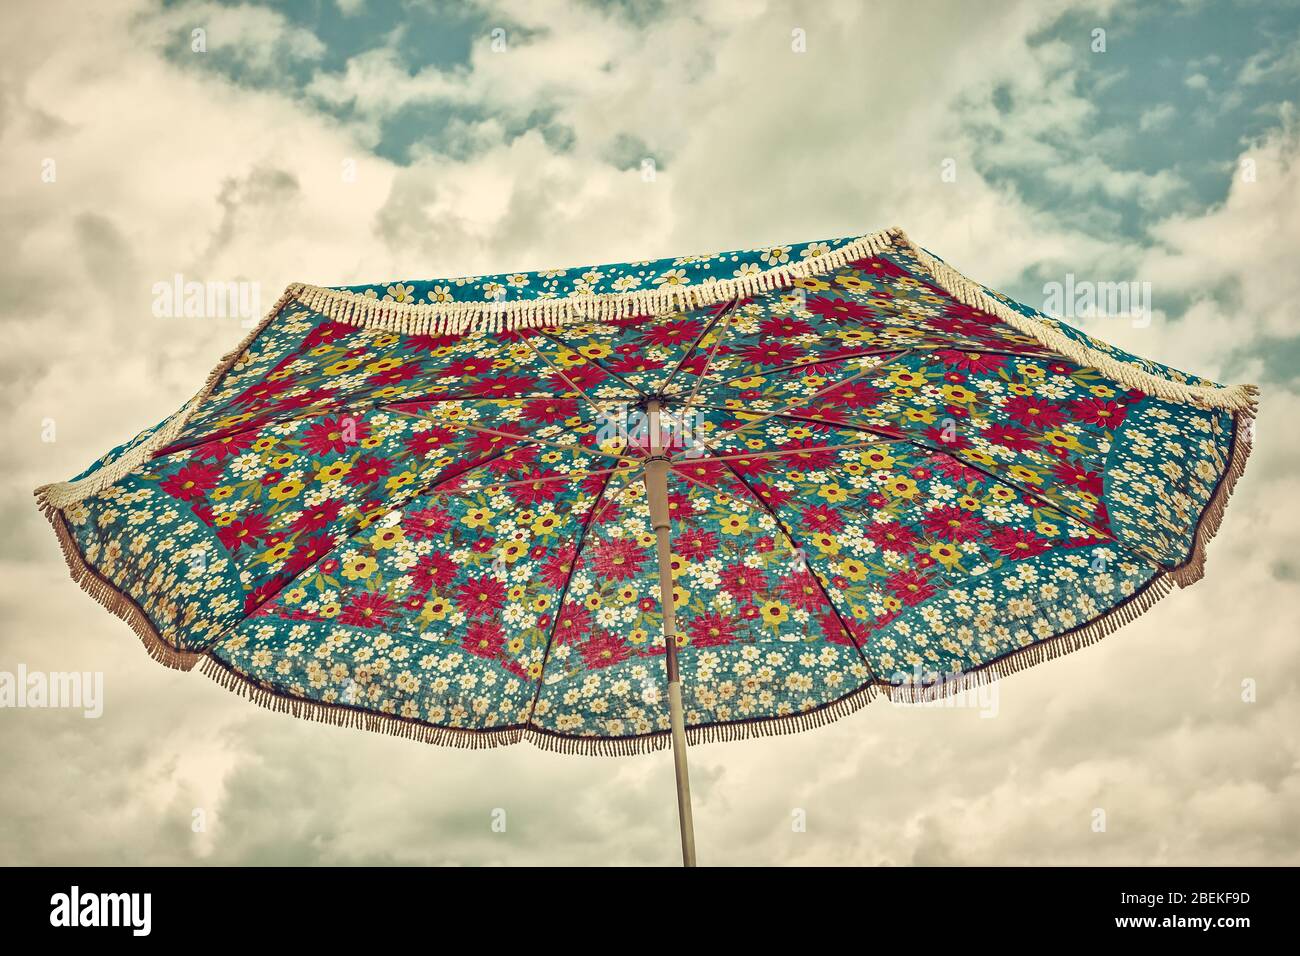 Retro-Stil Bild eines alten Sonnenschirms mit einem Blumenmuster Stockfoto